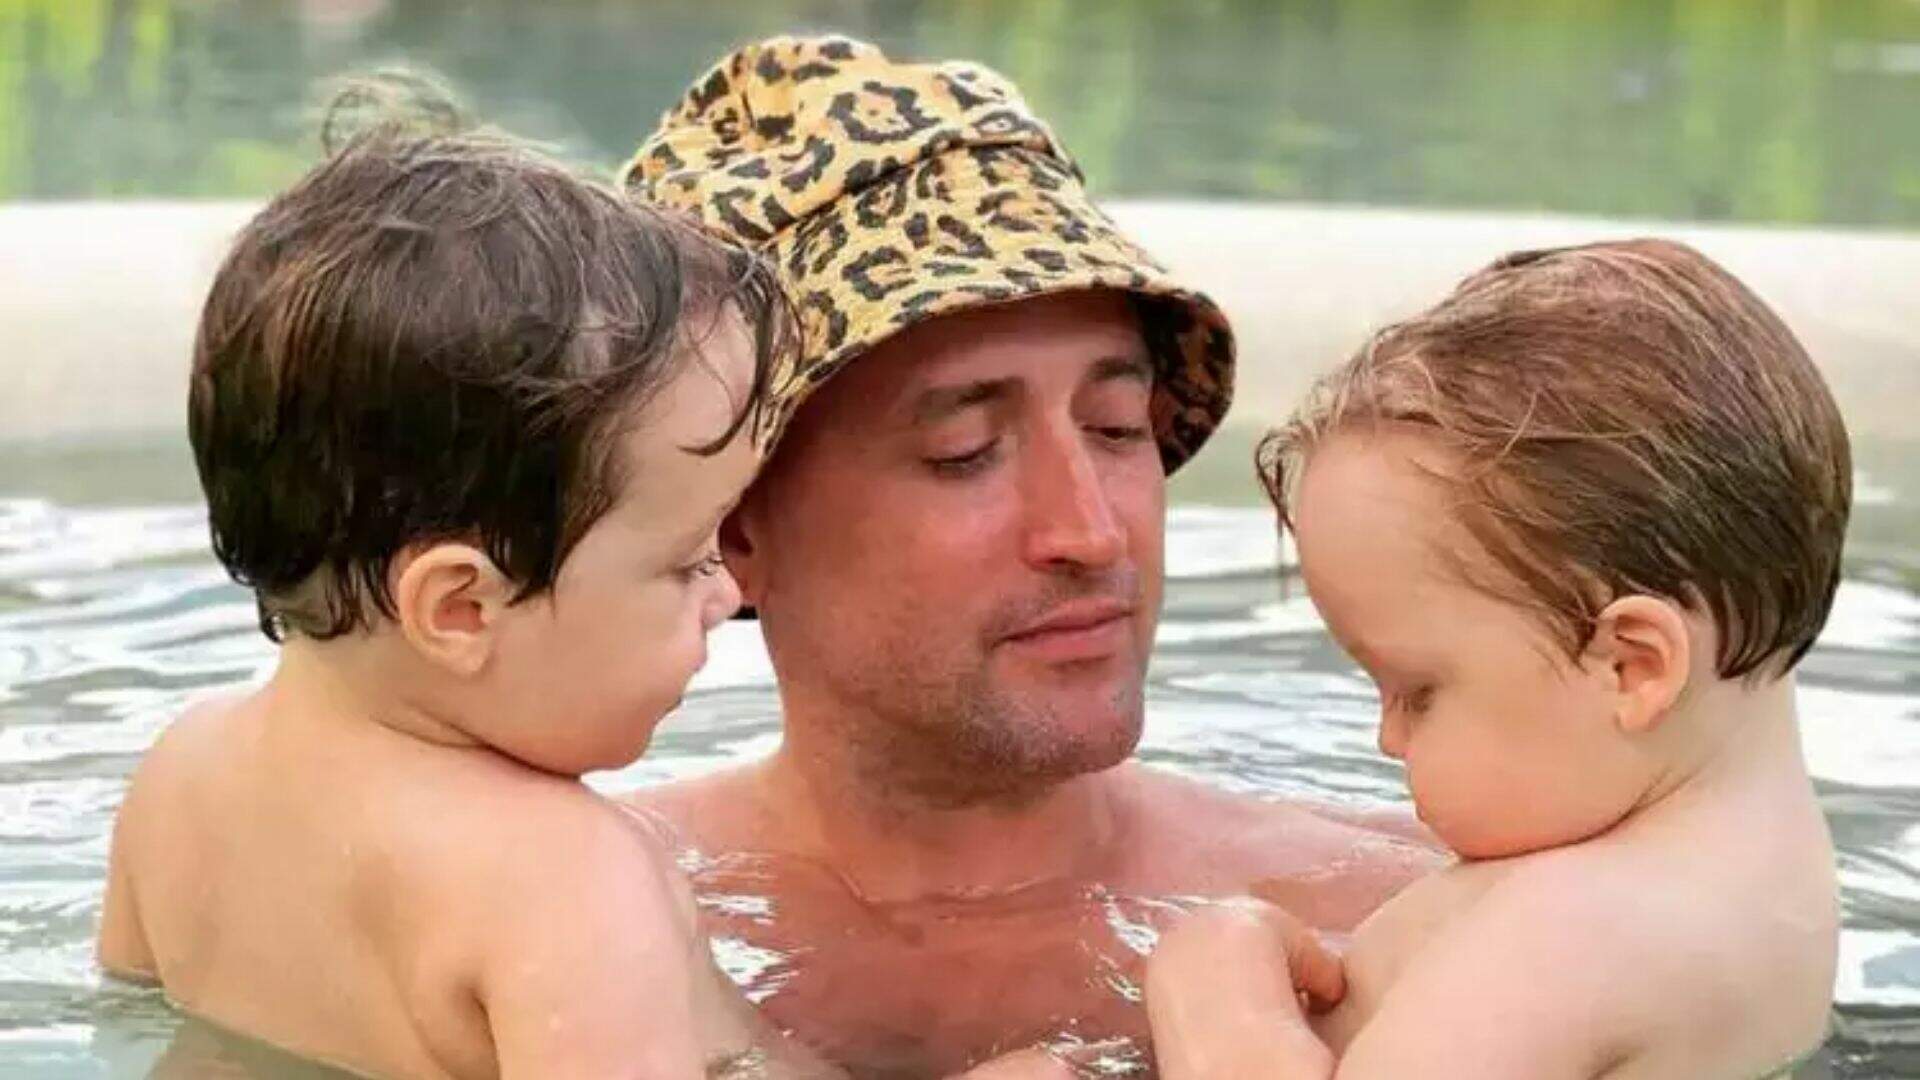 Filhos de Paulo Gustavo sentem presença do ator um ano após morte: “Brincando comigo”